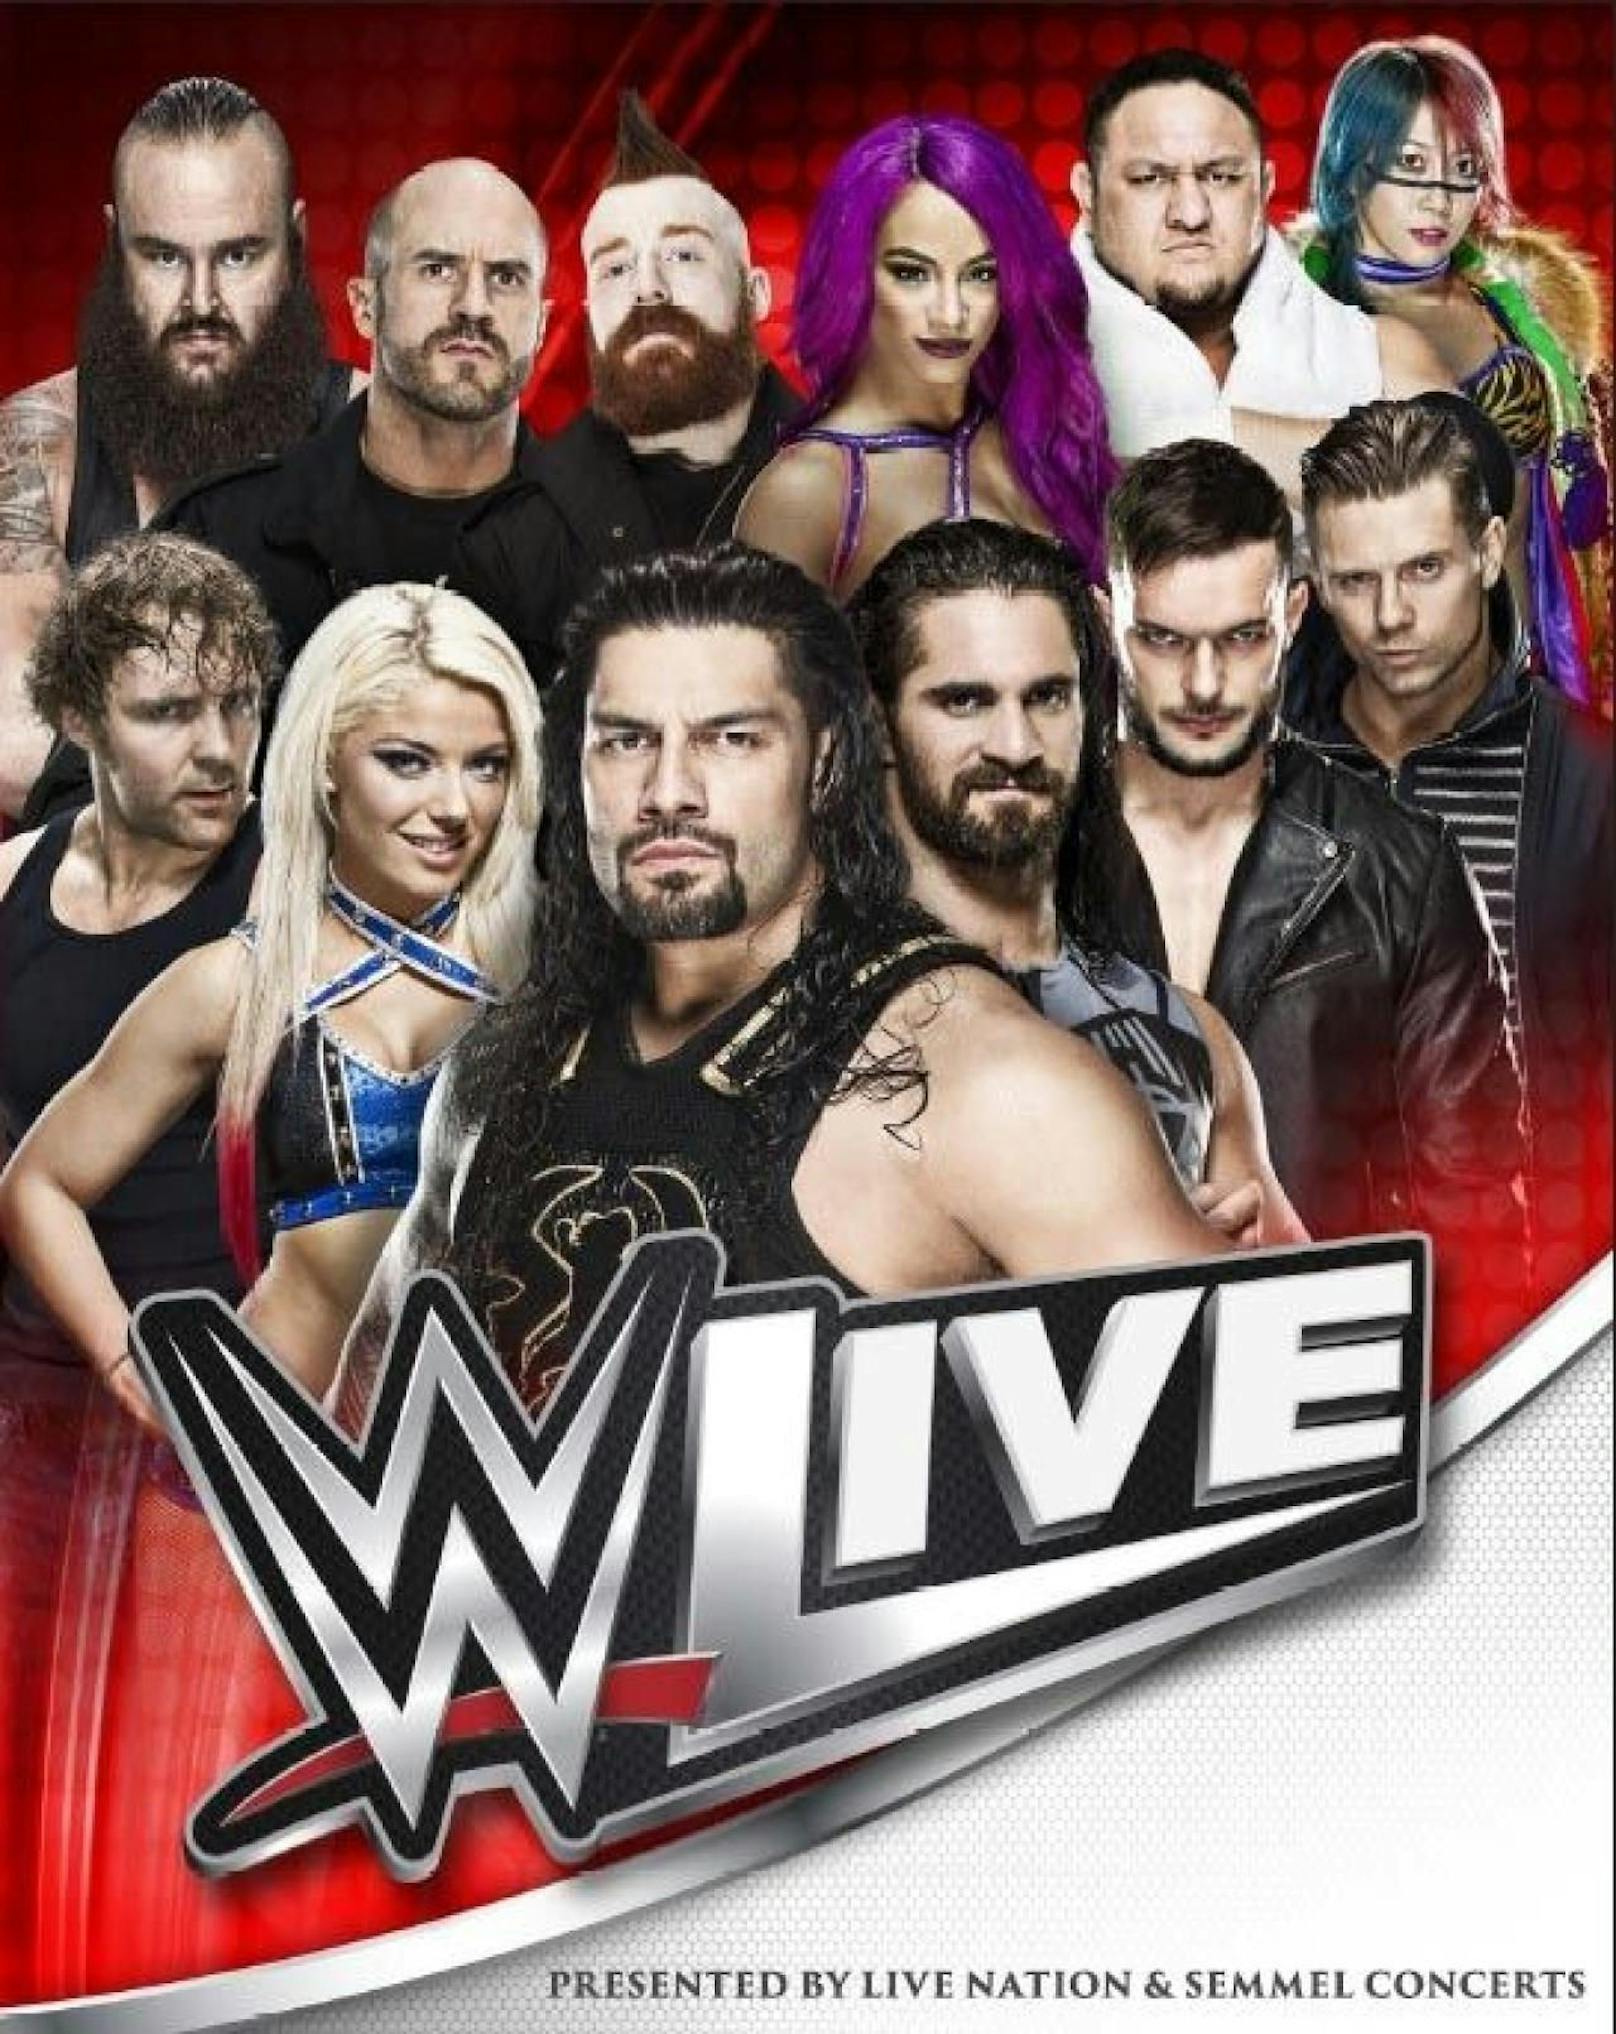 WWE Live gastiert am 17. Mai in der Wiener Stadthalle: Nehmen Sie jetzt am Gewinnspiel teil und gewinnen Sie Karten und T-Shirts.